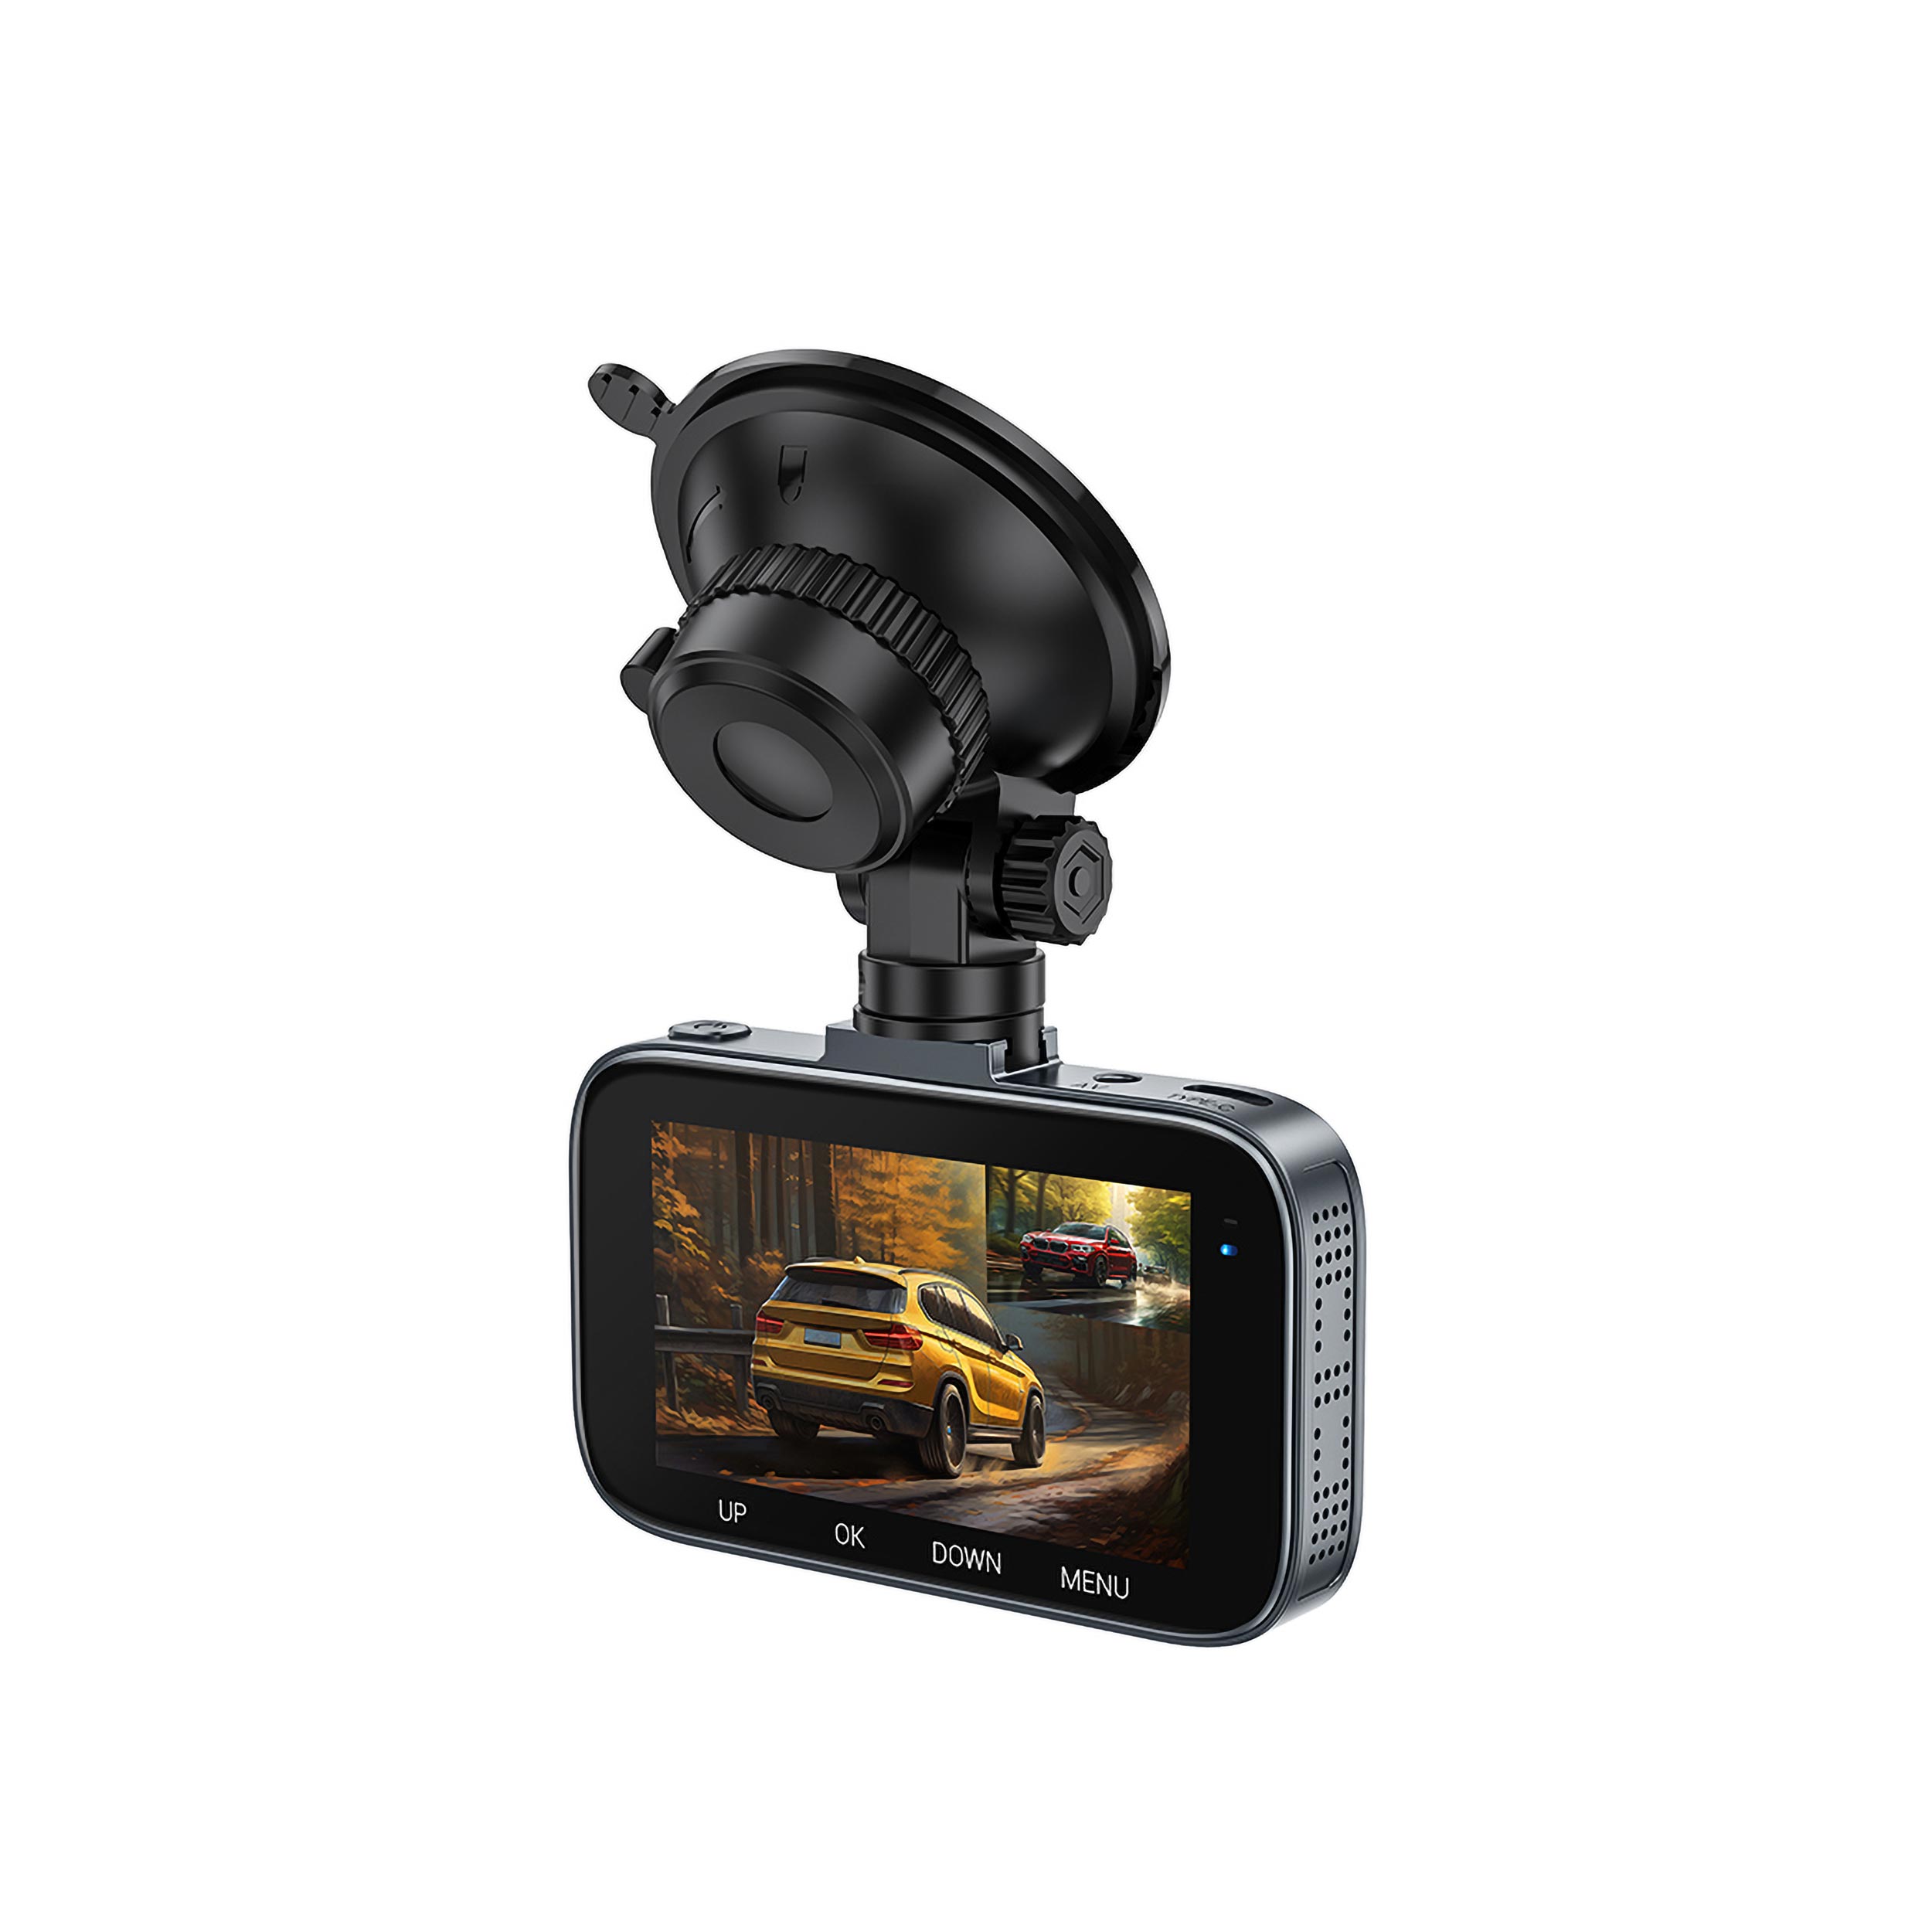 نکته خرید - قیمت روز دوربین فیلم برداری خودرو هوکو مدل DV6 خرید